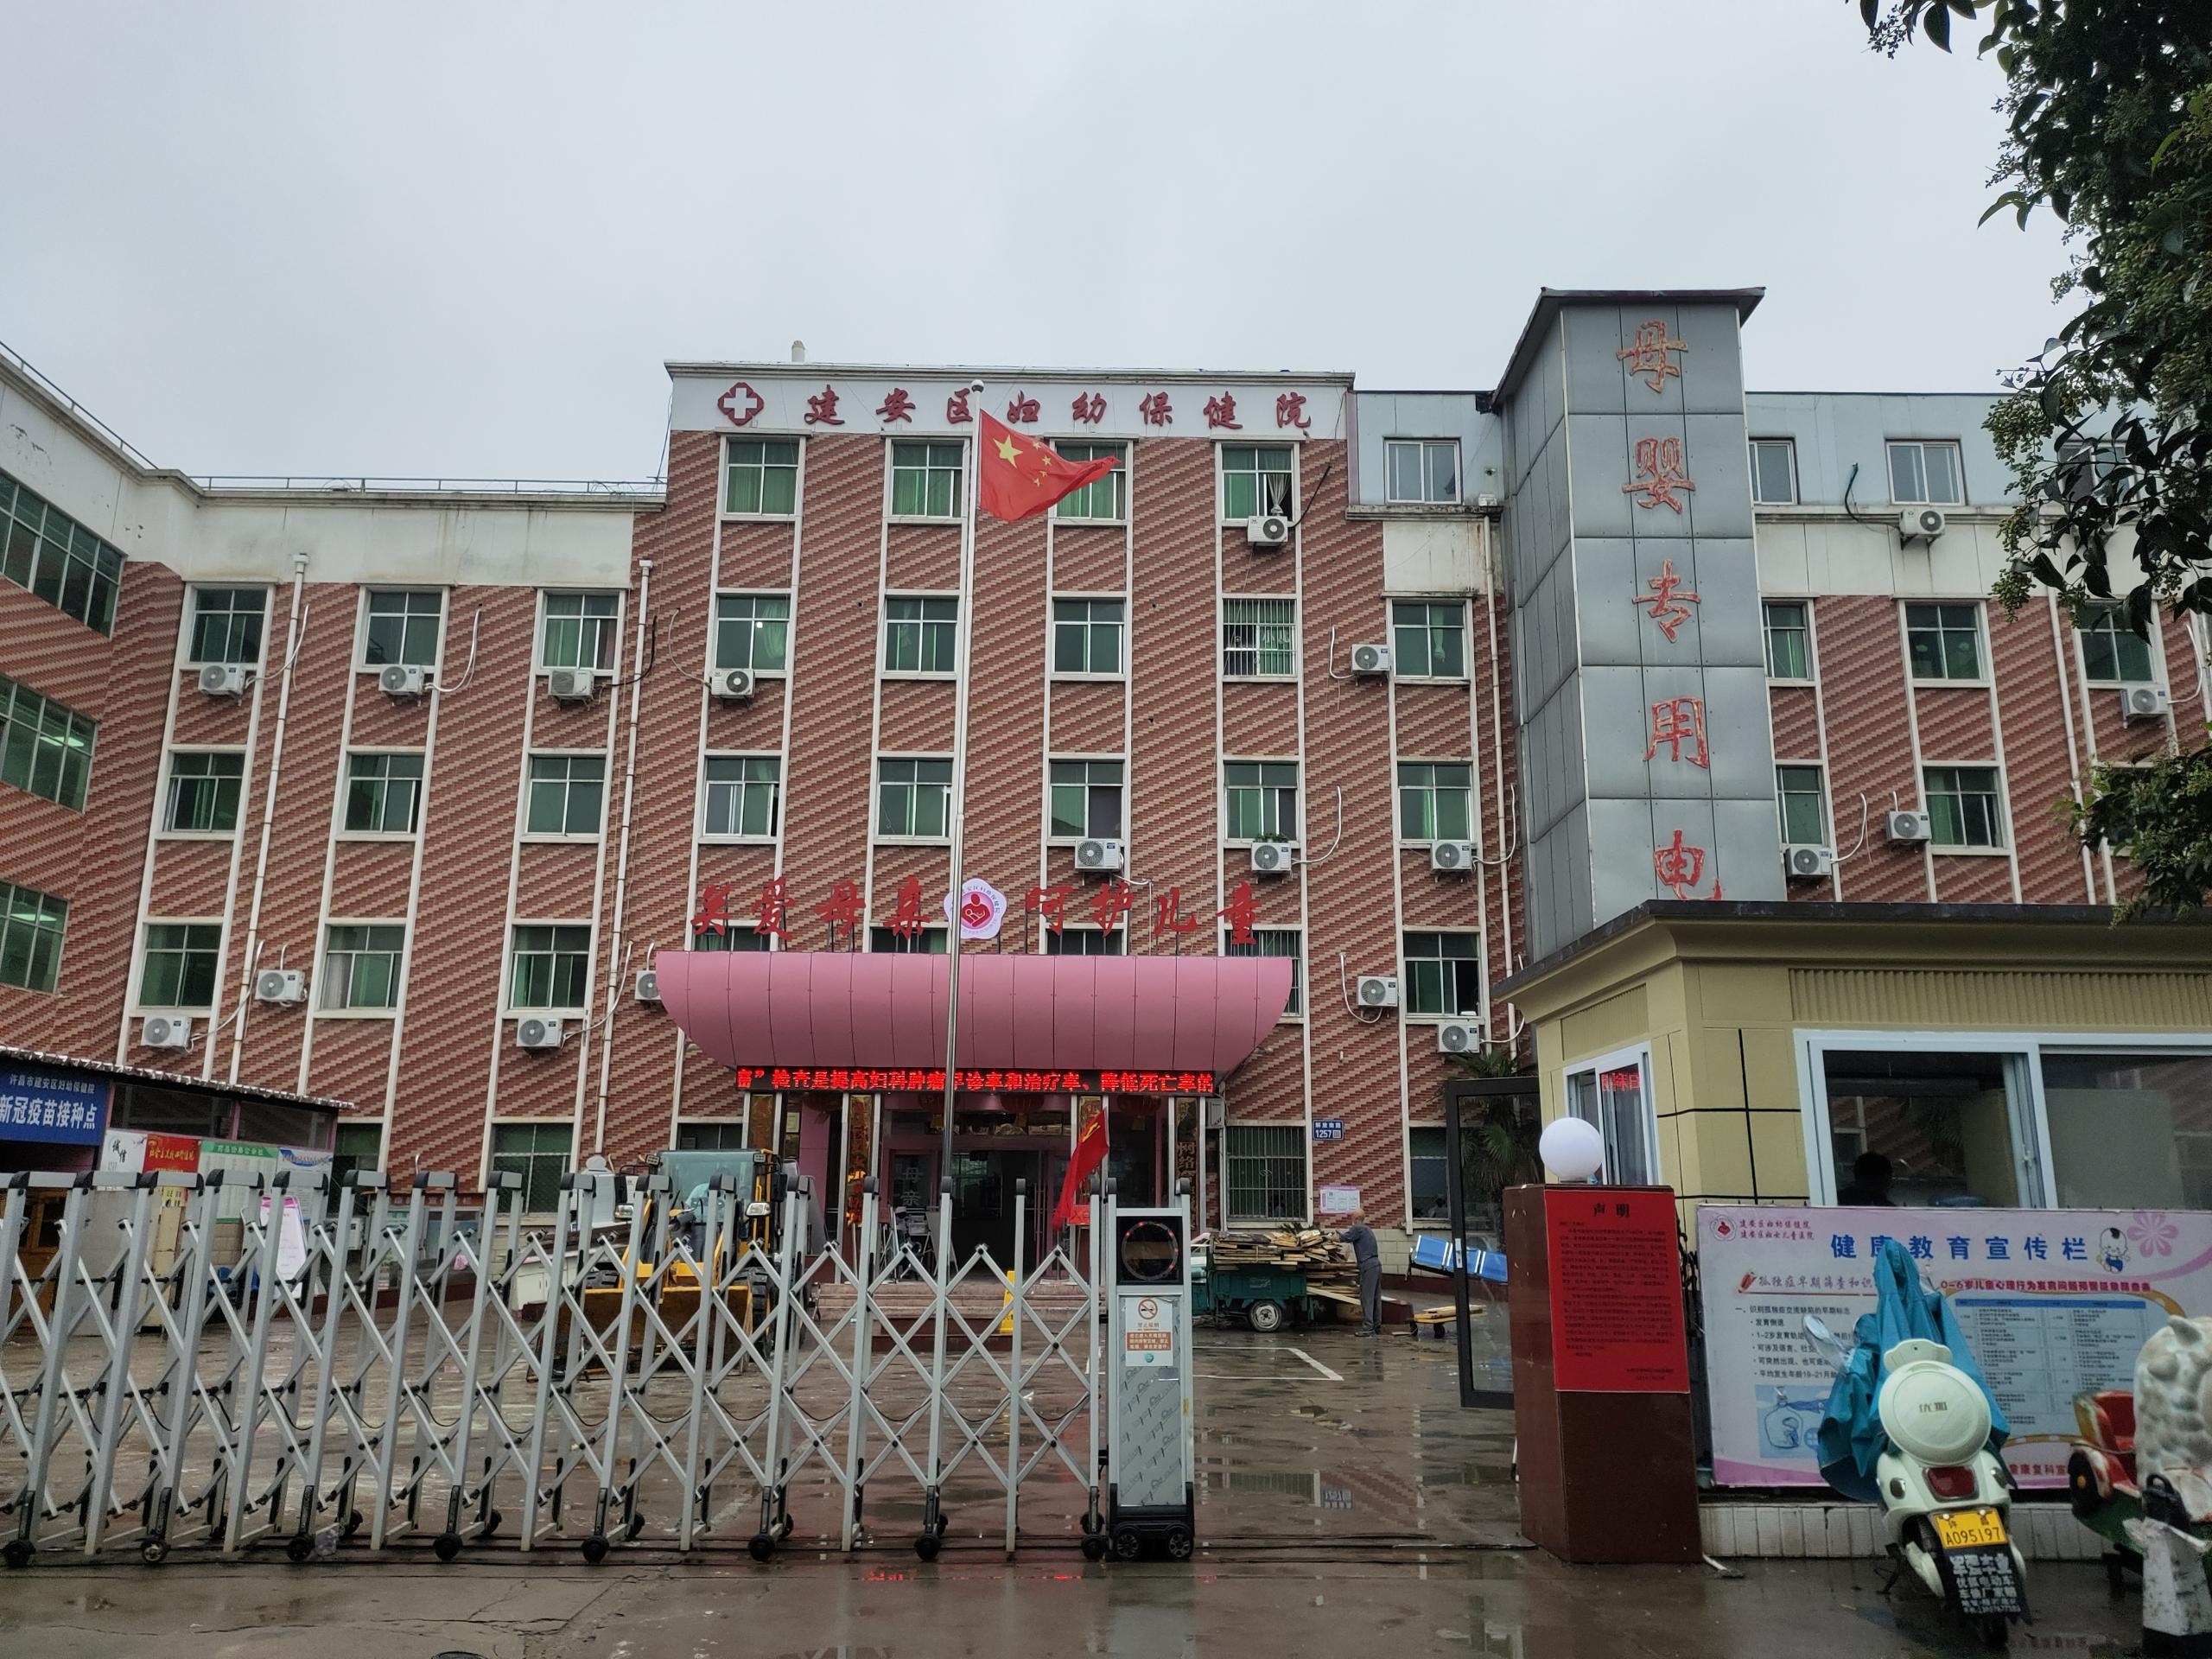 国产全自动乳汁分析仪厂家与河南许昌市建安区妇幼保健院达成合作9.22